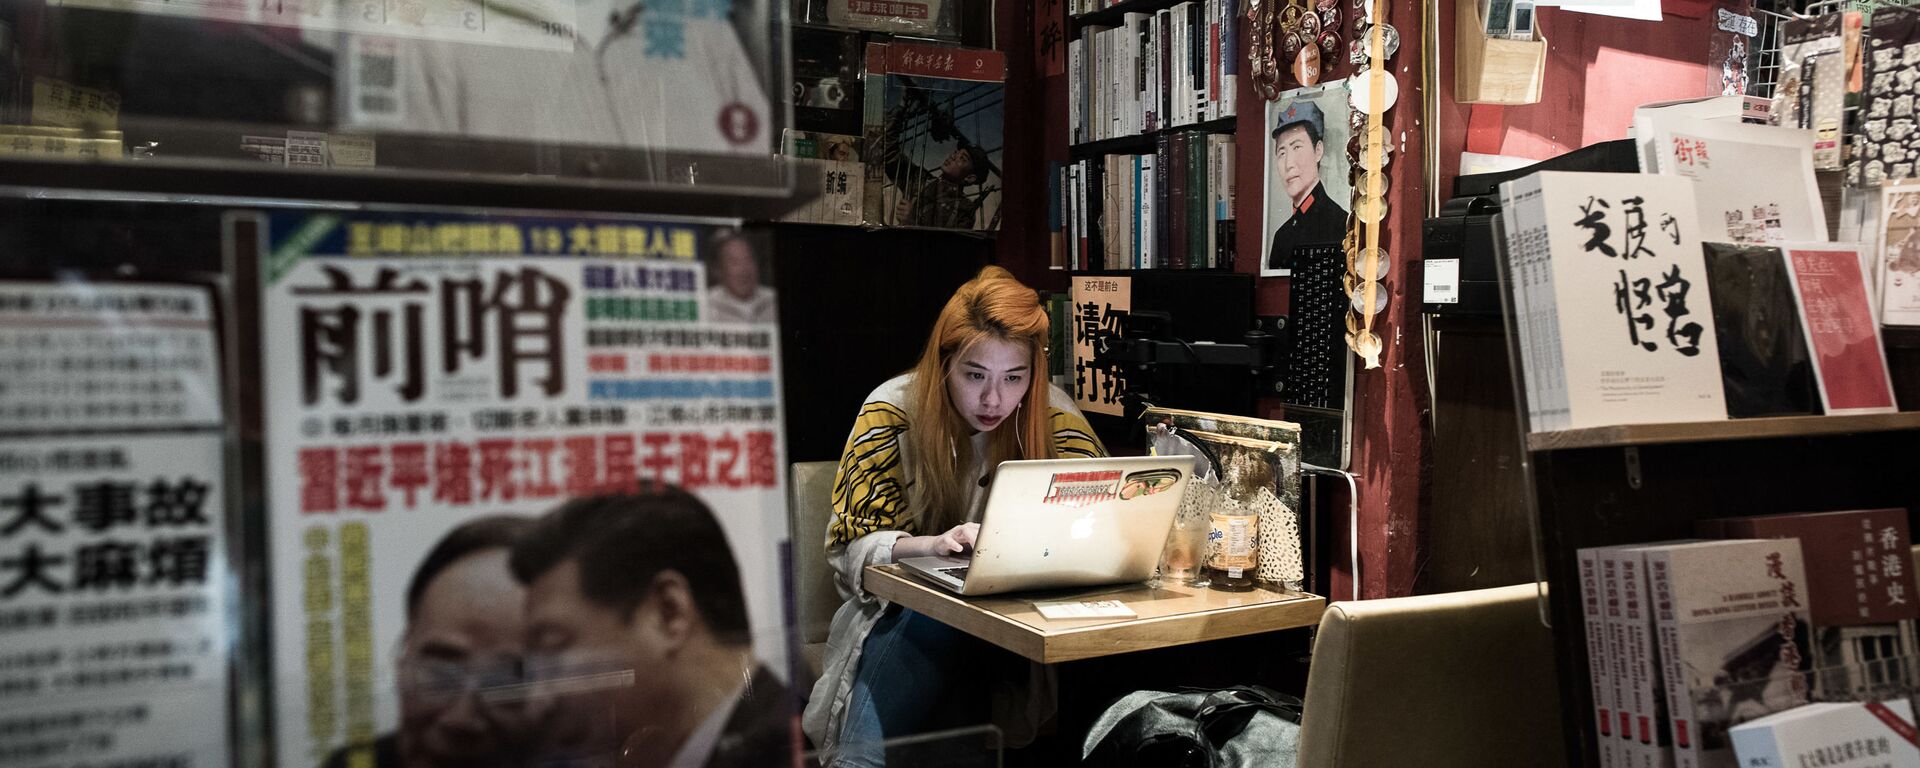 На этом снимке, сделанном 5 января 2016 года, изображен покупатель за ноутбуком в книжном магазине в районе Козуэй-Бэй в Гонконге. Исчезновение пяти гонконгских книготорговцев вызвало дрожь в Гонконге, поскольку растет беспокойство по поводу ужесточения контроля Китая над городом. Книжные магазины убирают со своих полок политические произведения, в то время как издатели и владельцы магазинов, продающие книги, запрещенные в материковом Китае, заявляют, что теперь они чувствуют себя под угрозой. - Sputnik Абхазия, 1920, 22.07.2021